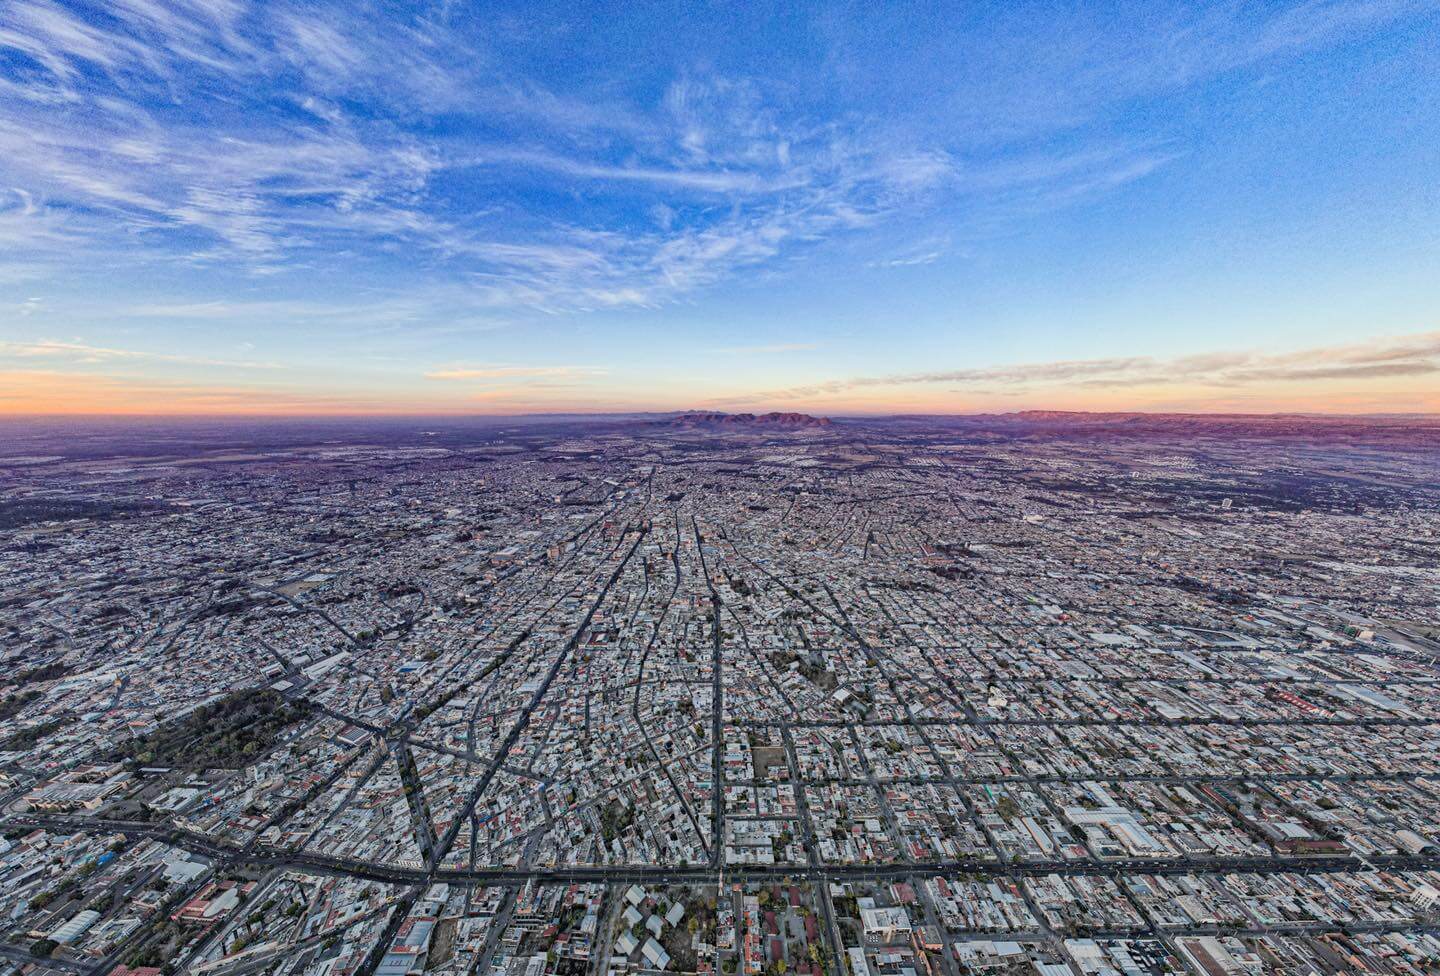 Vista aérea de Aguascalientes, donde encontrarás una variedad de opciones de vivienda